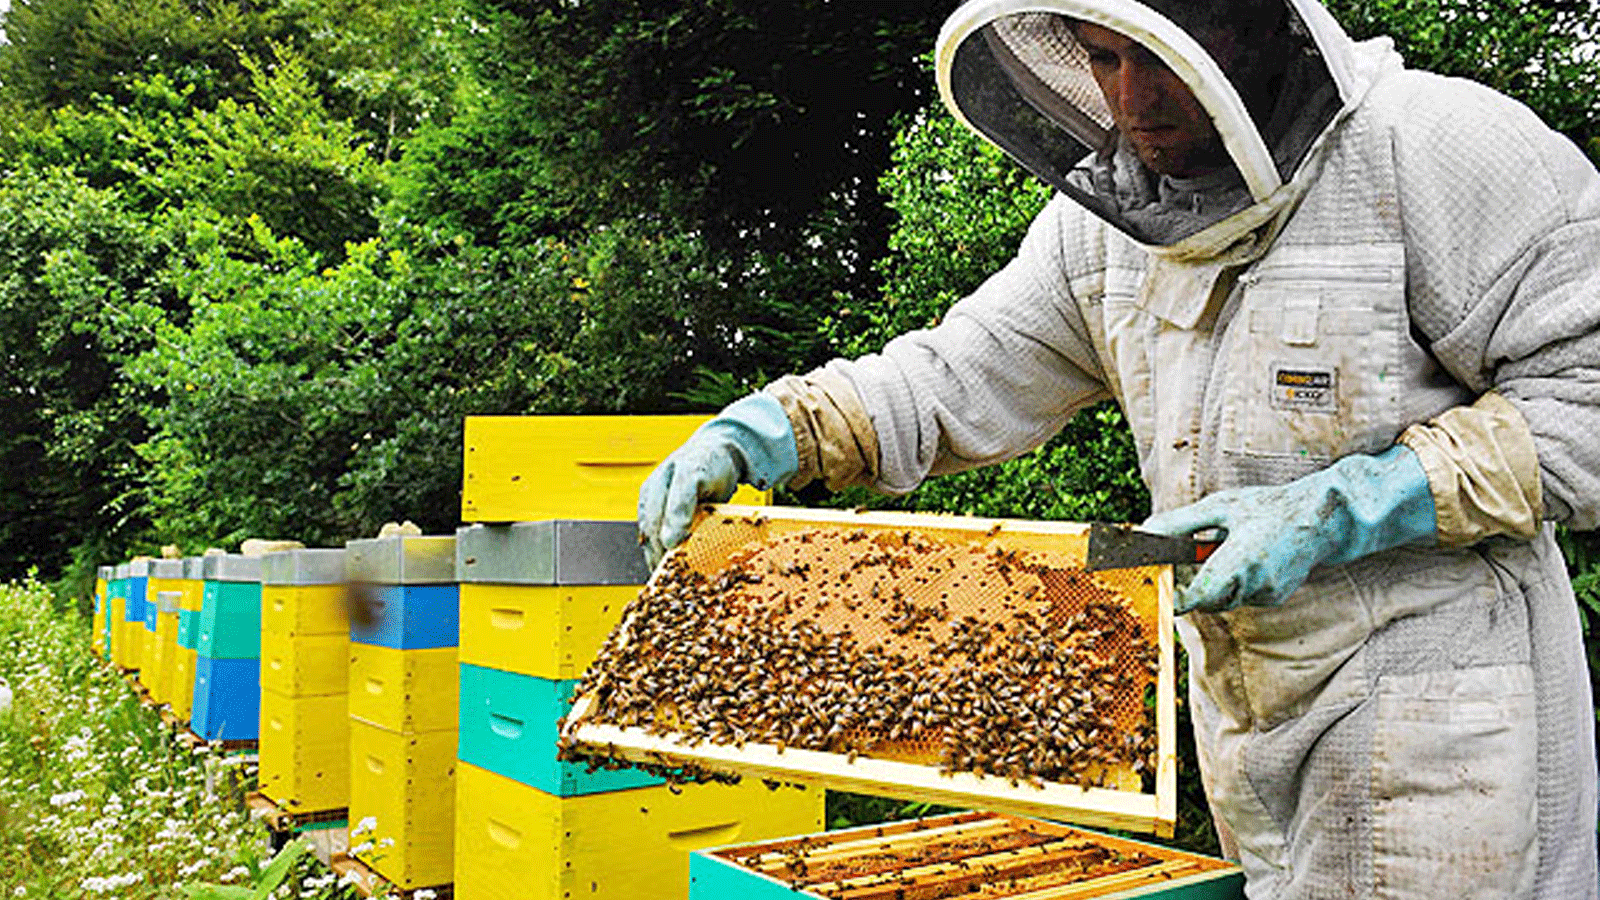 مربي النحل الفرنسي توماس لو جلاتين يتفقد إطارات خلية النحل الخاصة به في بلوردوت، غرب فرنسا